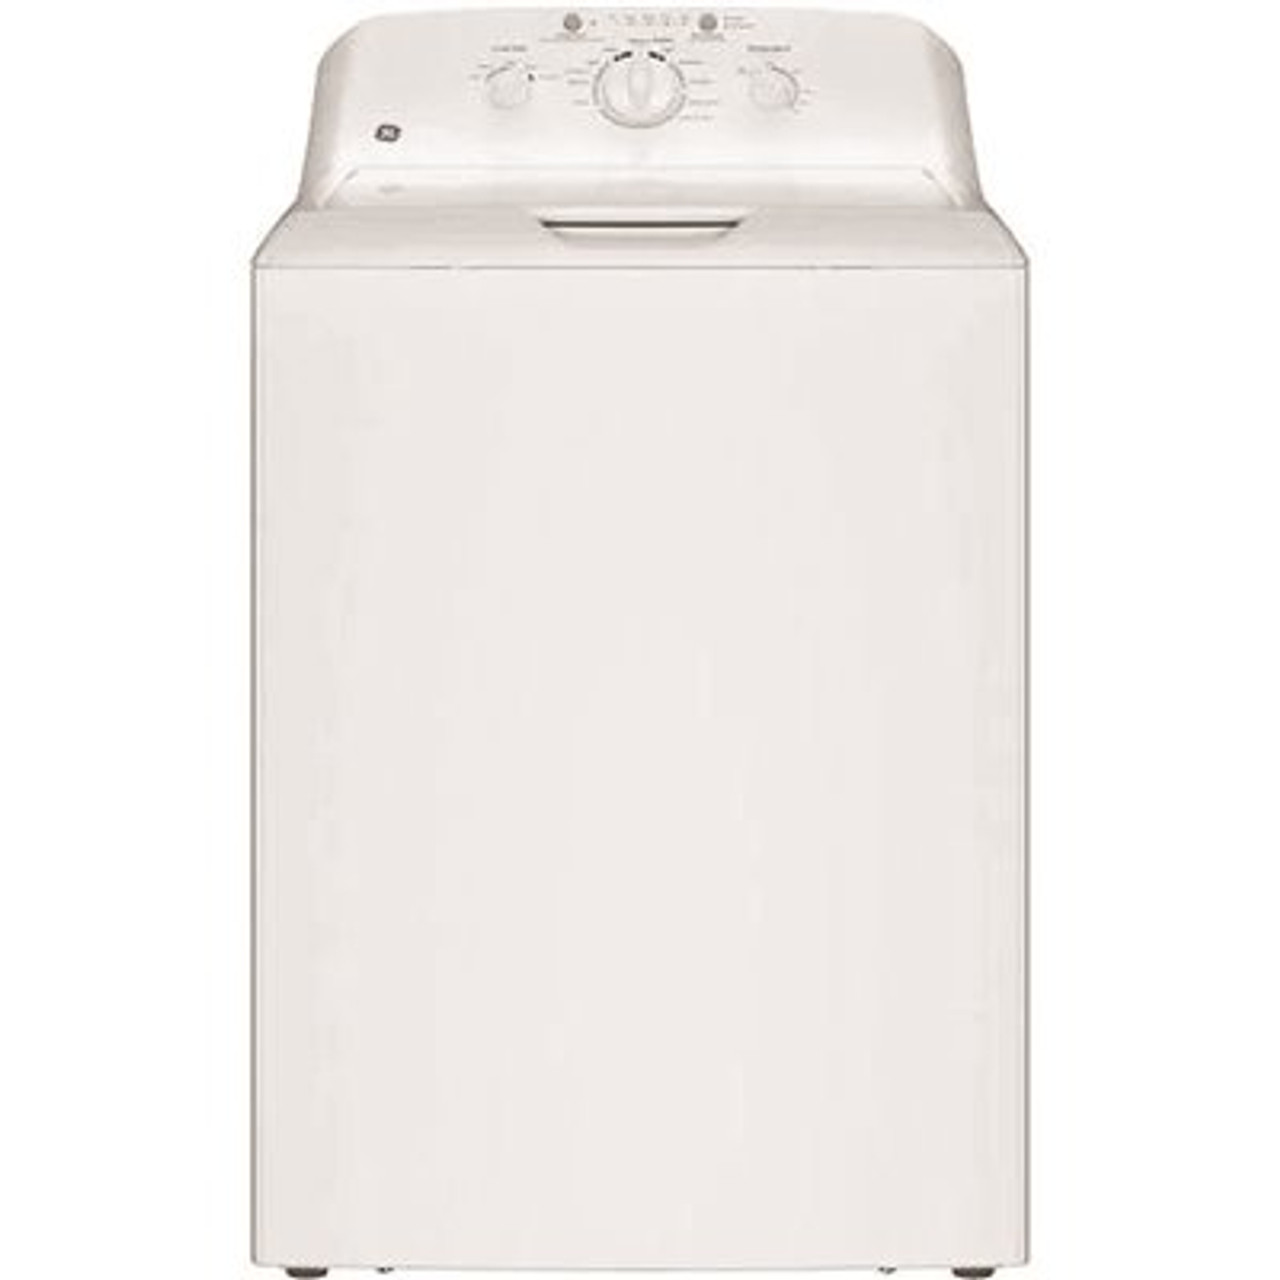 GE 4.0CF Top Load Washing Machine White